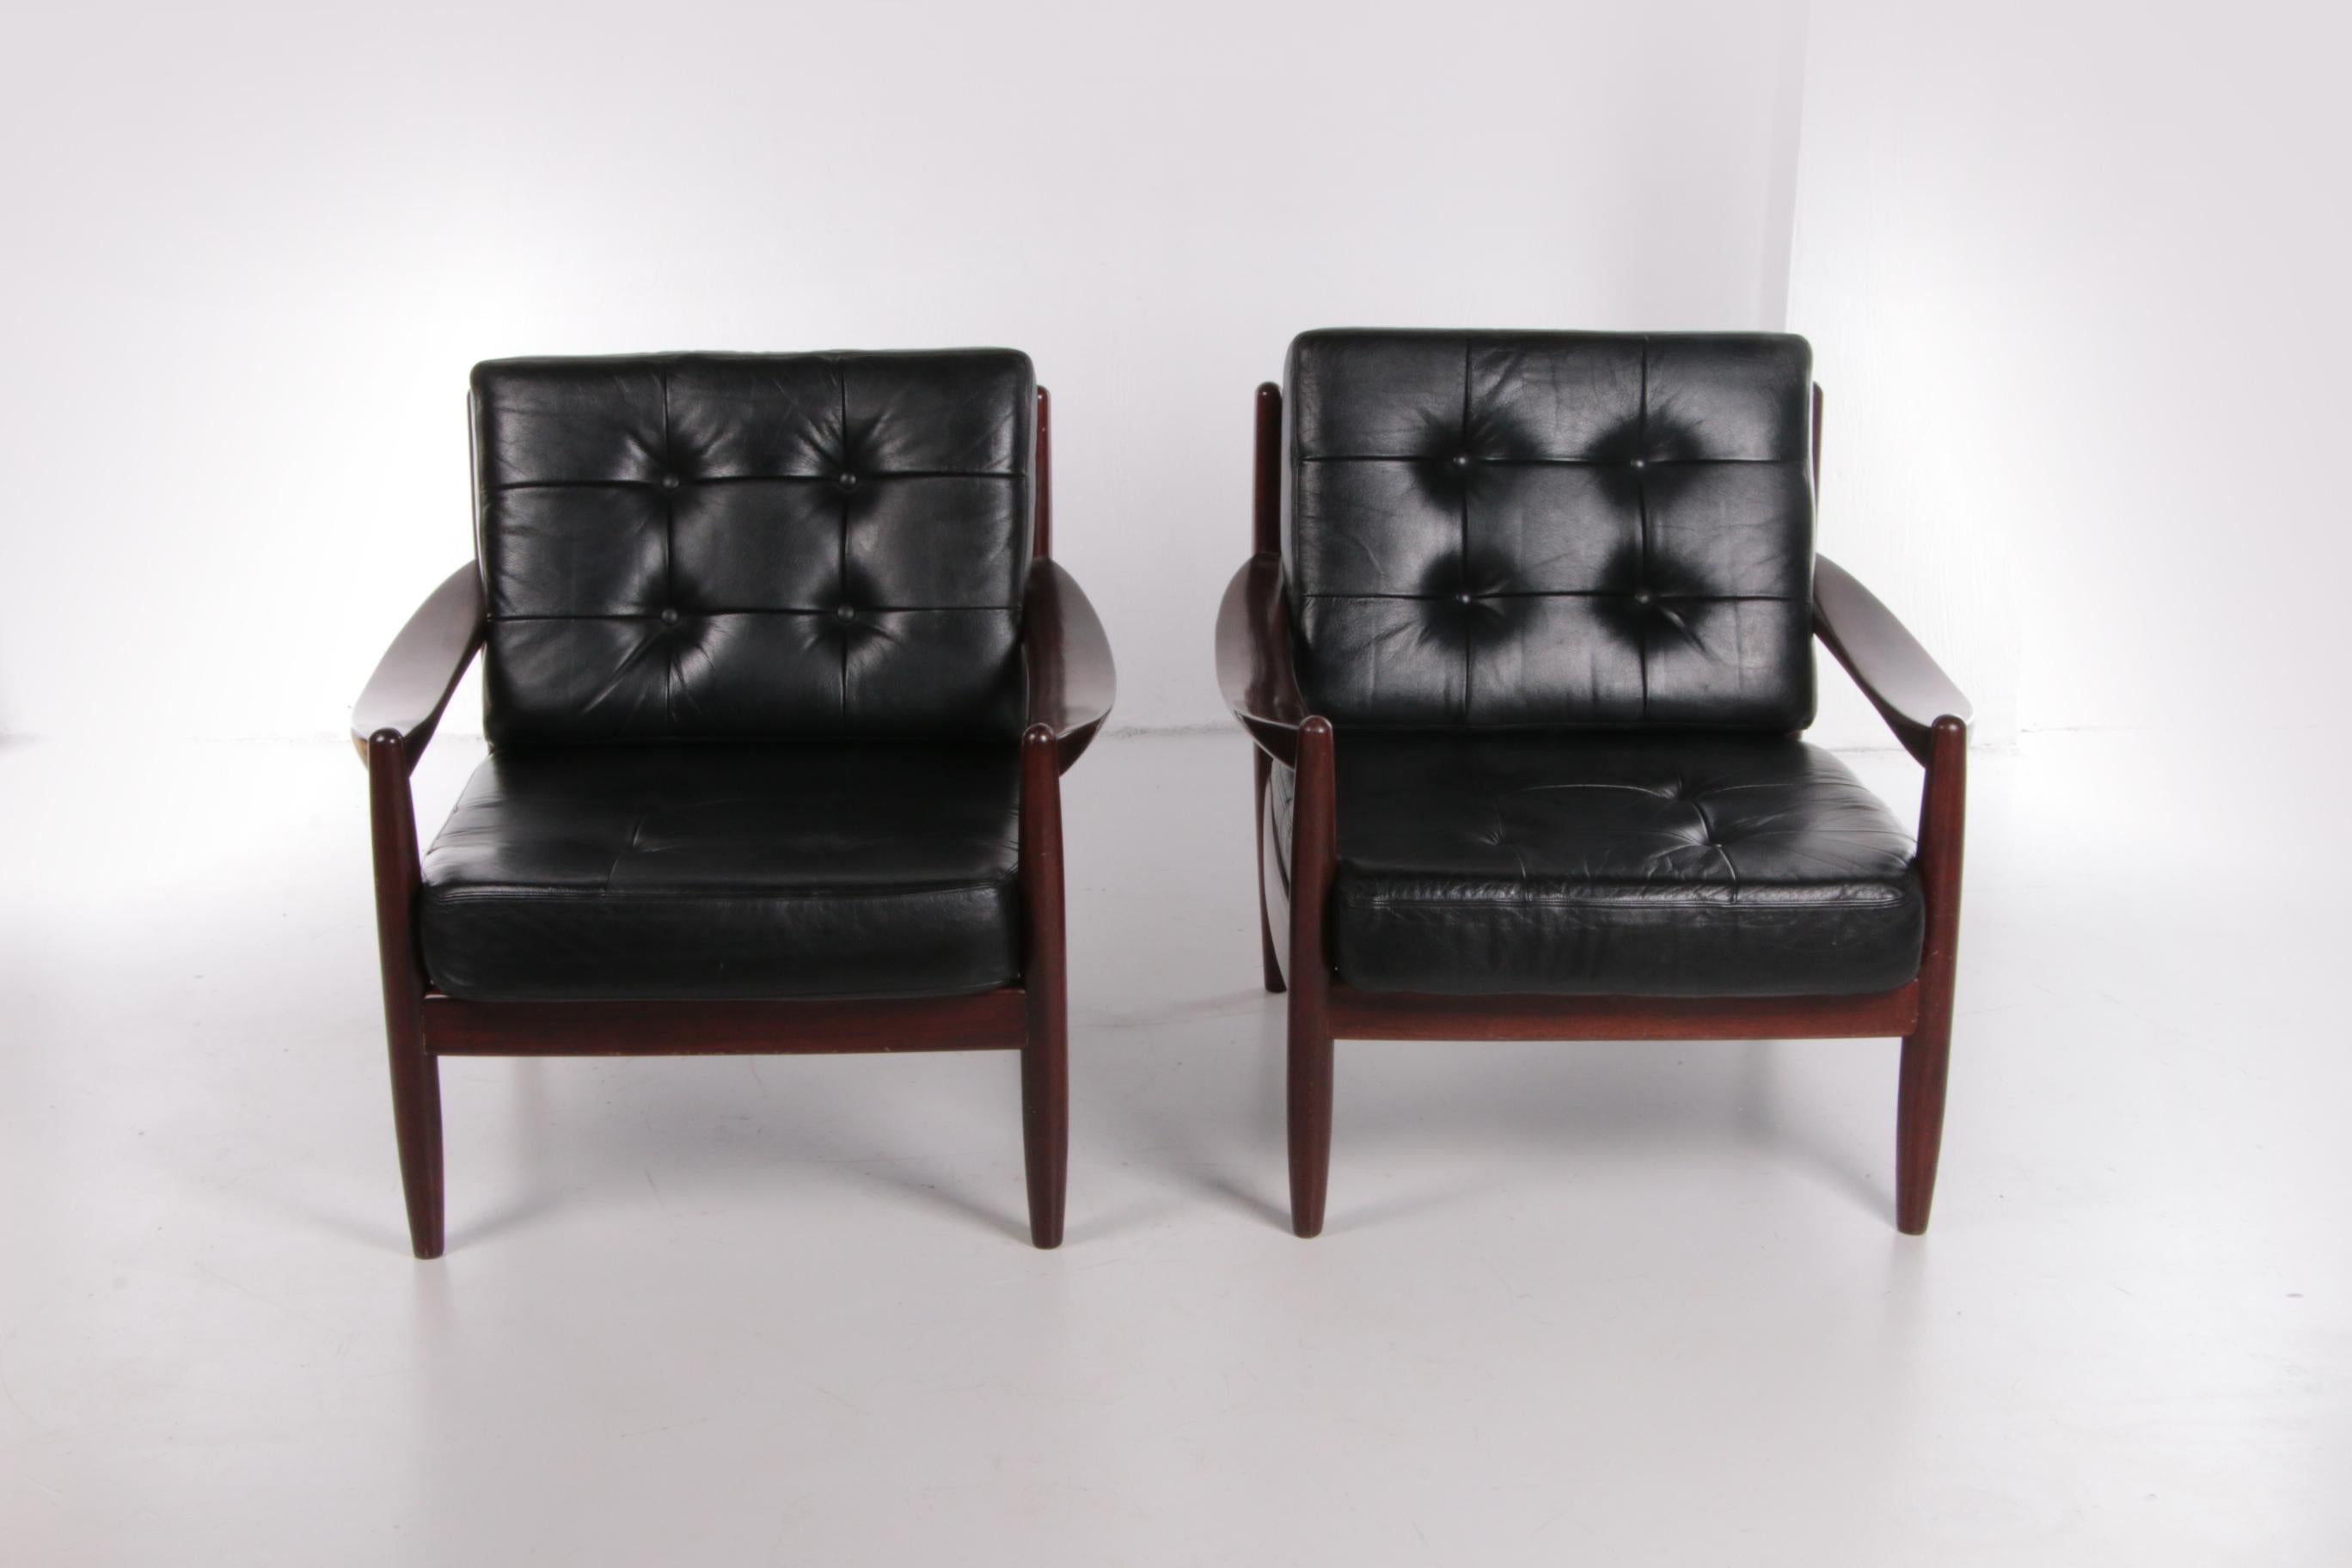 Un ensemble vintage de deux beaux fauteuils en bois foncé. Les deux chaises ont un design scandinave simple et luxueux.

Les fauteuils ont été produits dans les années 1960 et proviennent du Danemark.

Les chaises sont composées de cuir noir